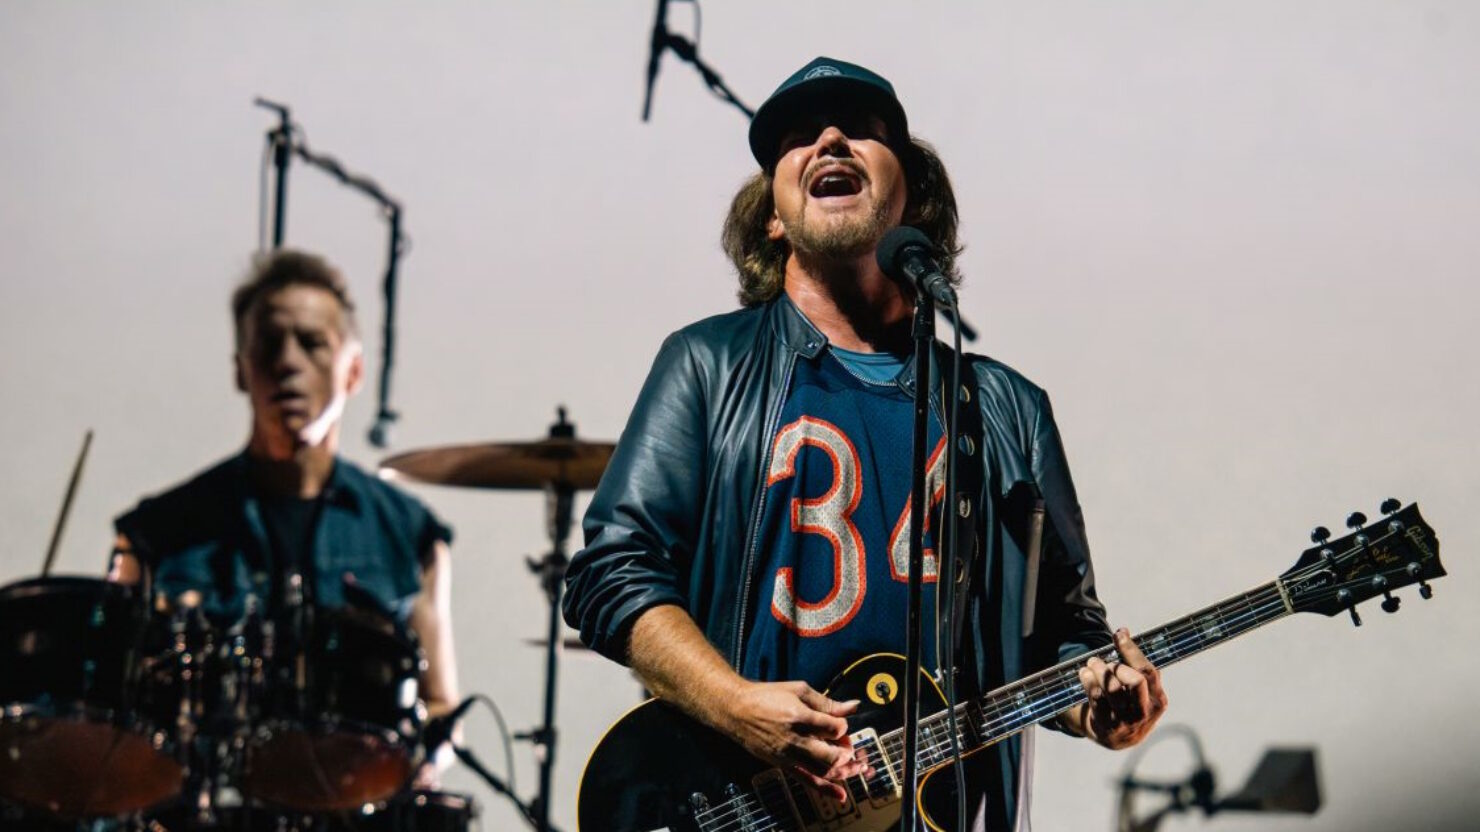 Pearl Jam annule son concert à Londres pour cause de maladie